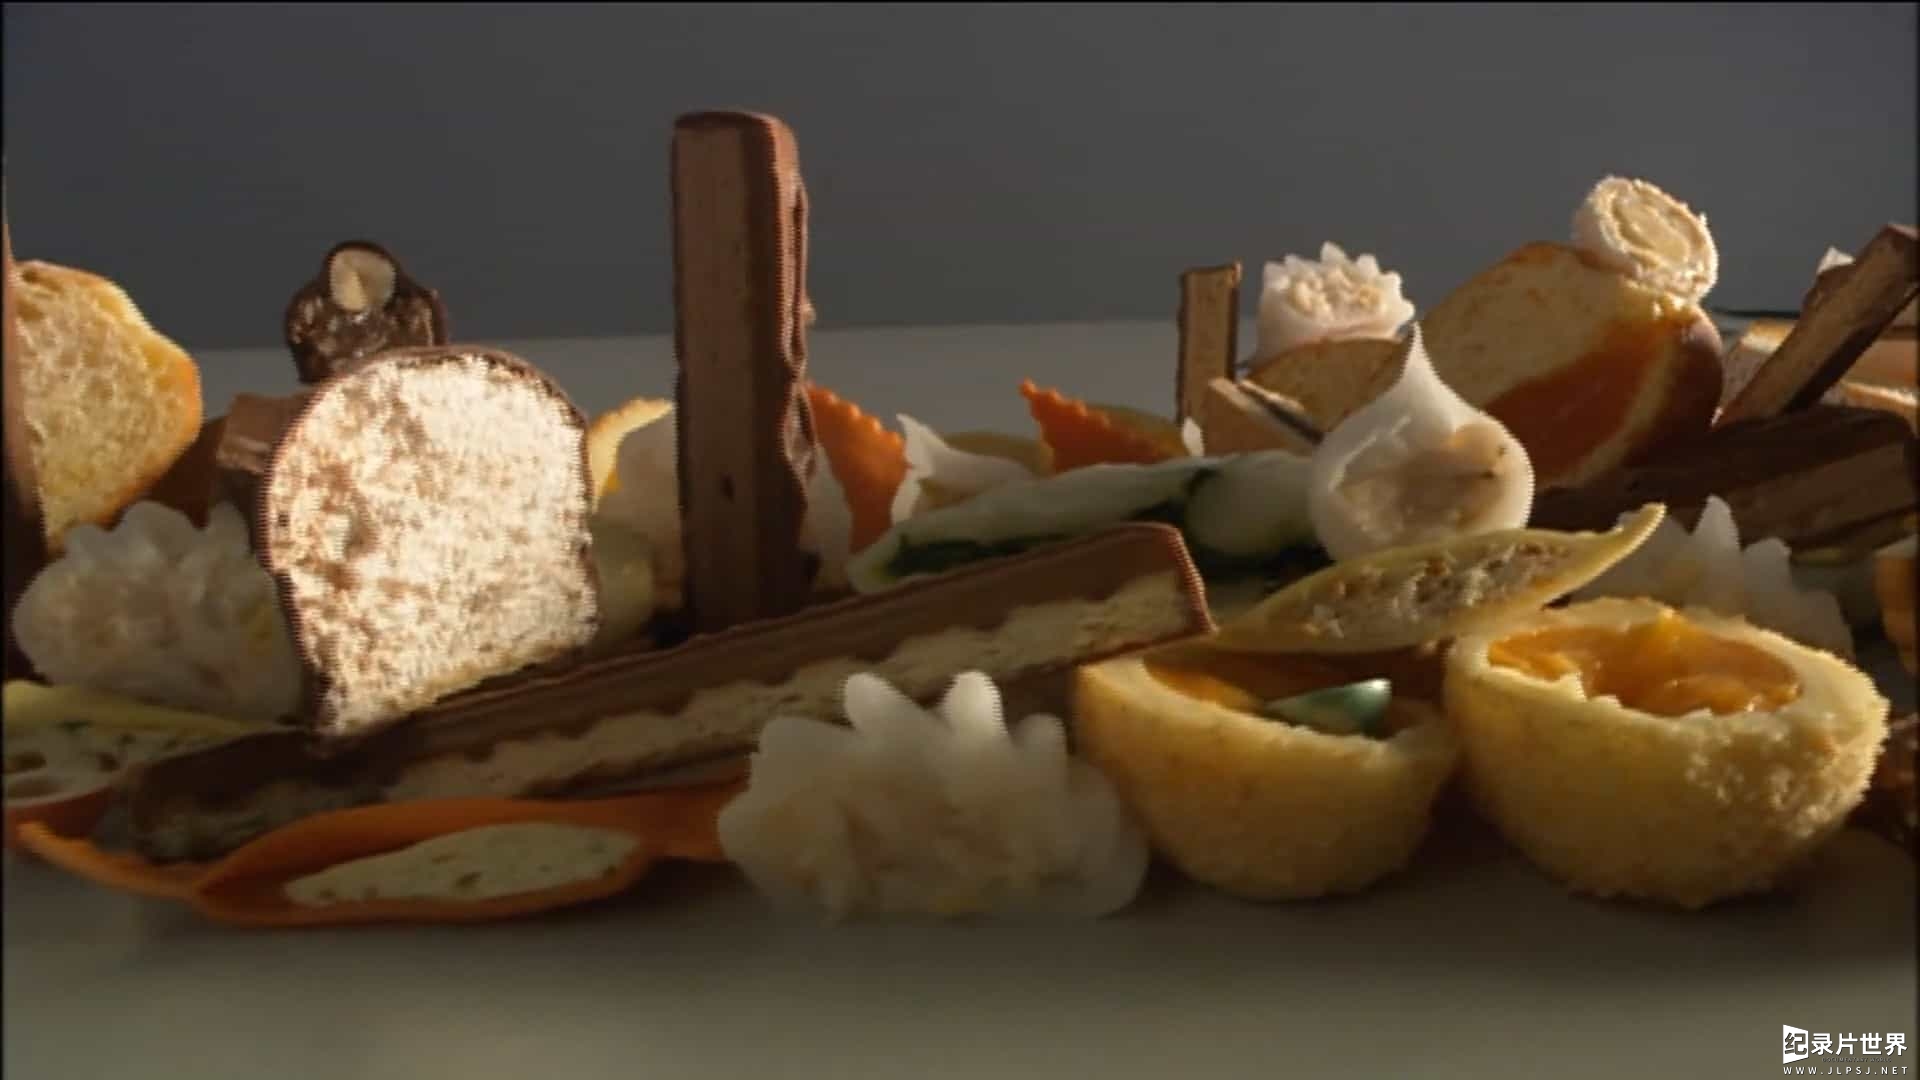 美食纪录片/世界美食系列《食品设计/食物美学 Food Design 2009》德语内嵌中字